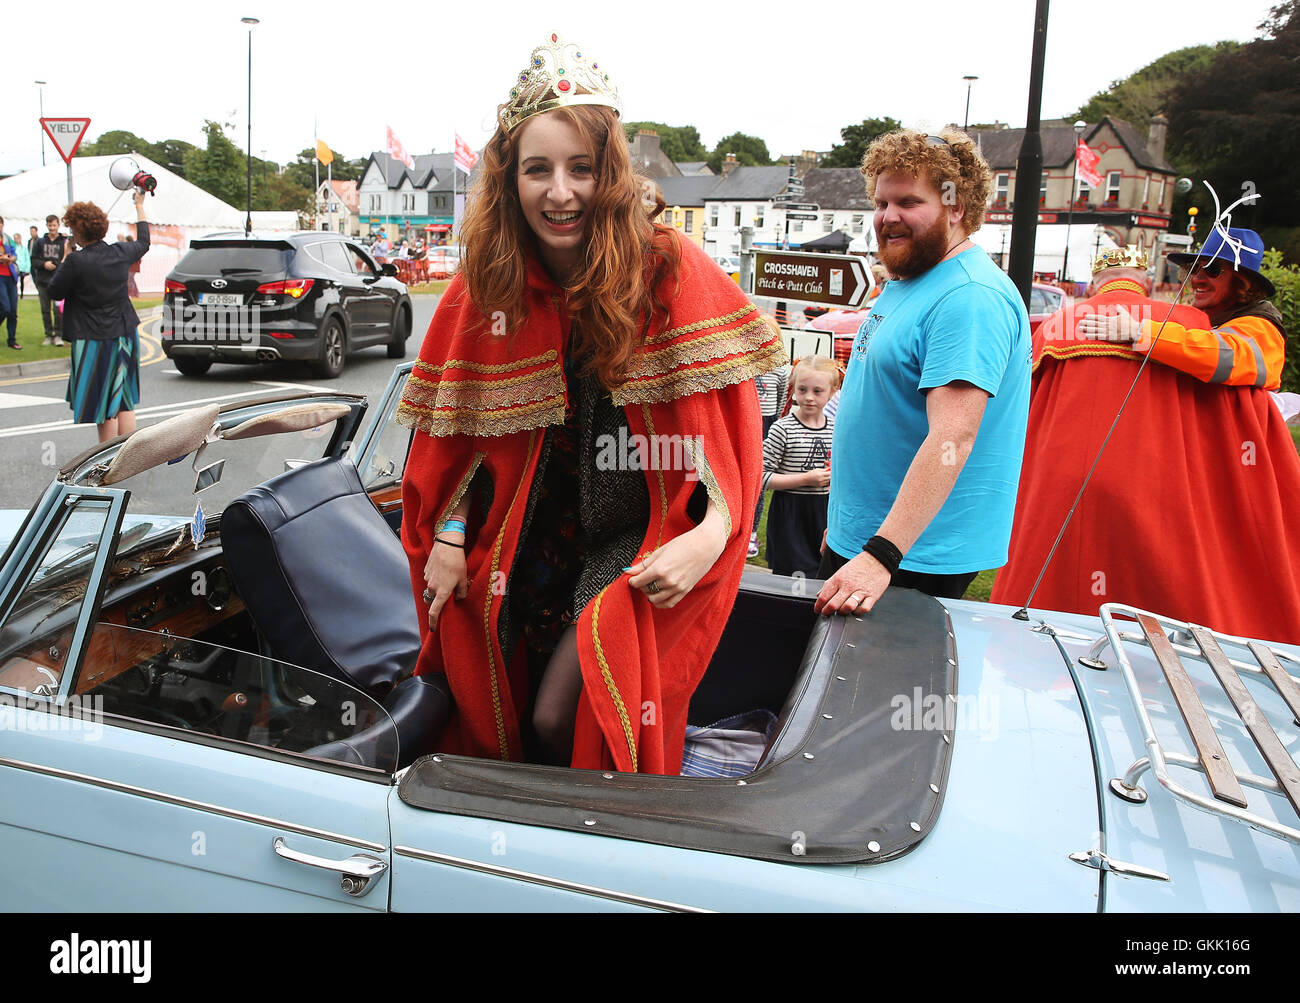 Der frisch gekrönte "Königin der rothaarige" Emma Ni Chearuil auf der irischen Rothaarige Convention statt in dem Dorf Crosshaven in Cork, Irland. Stockfoto